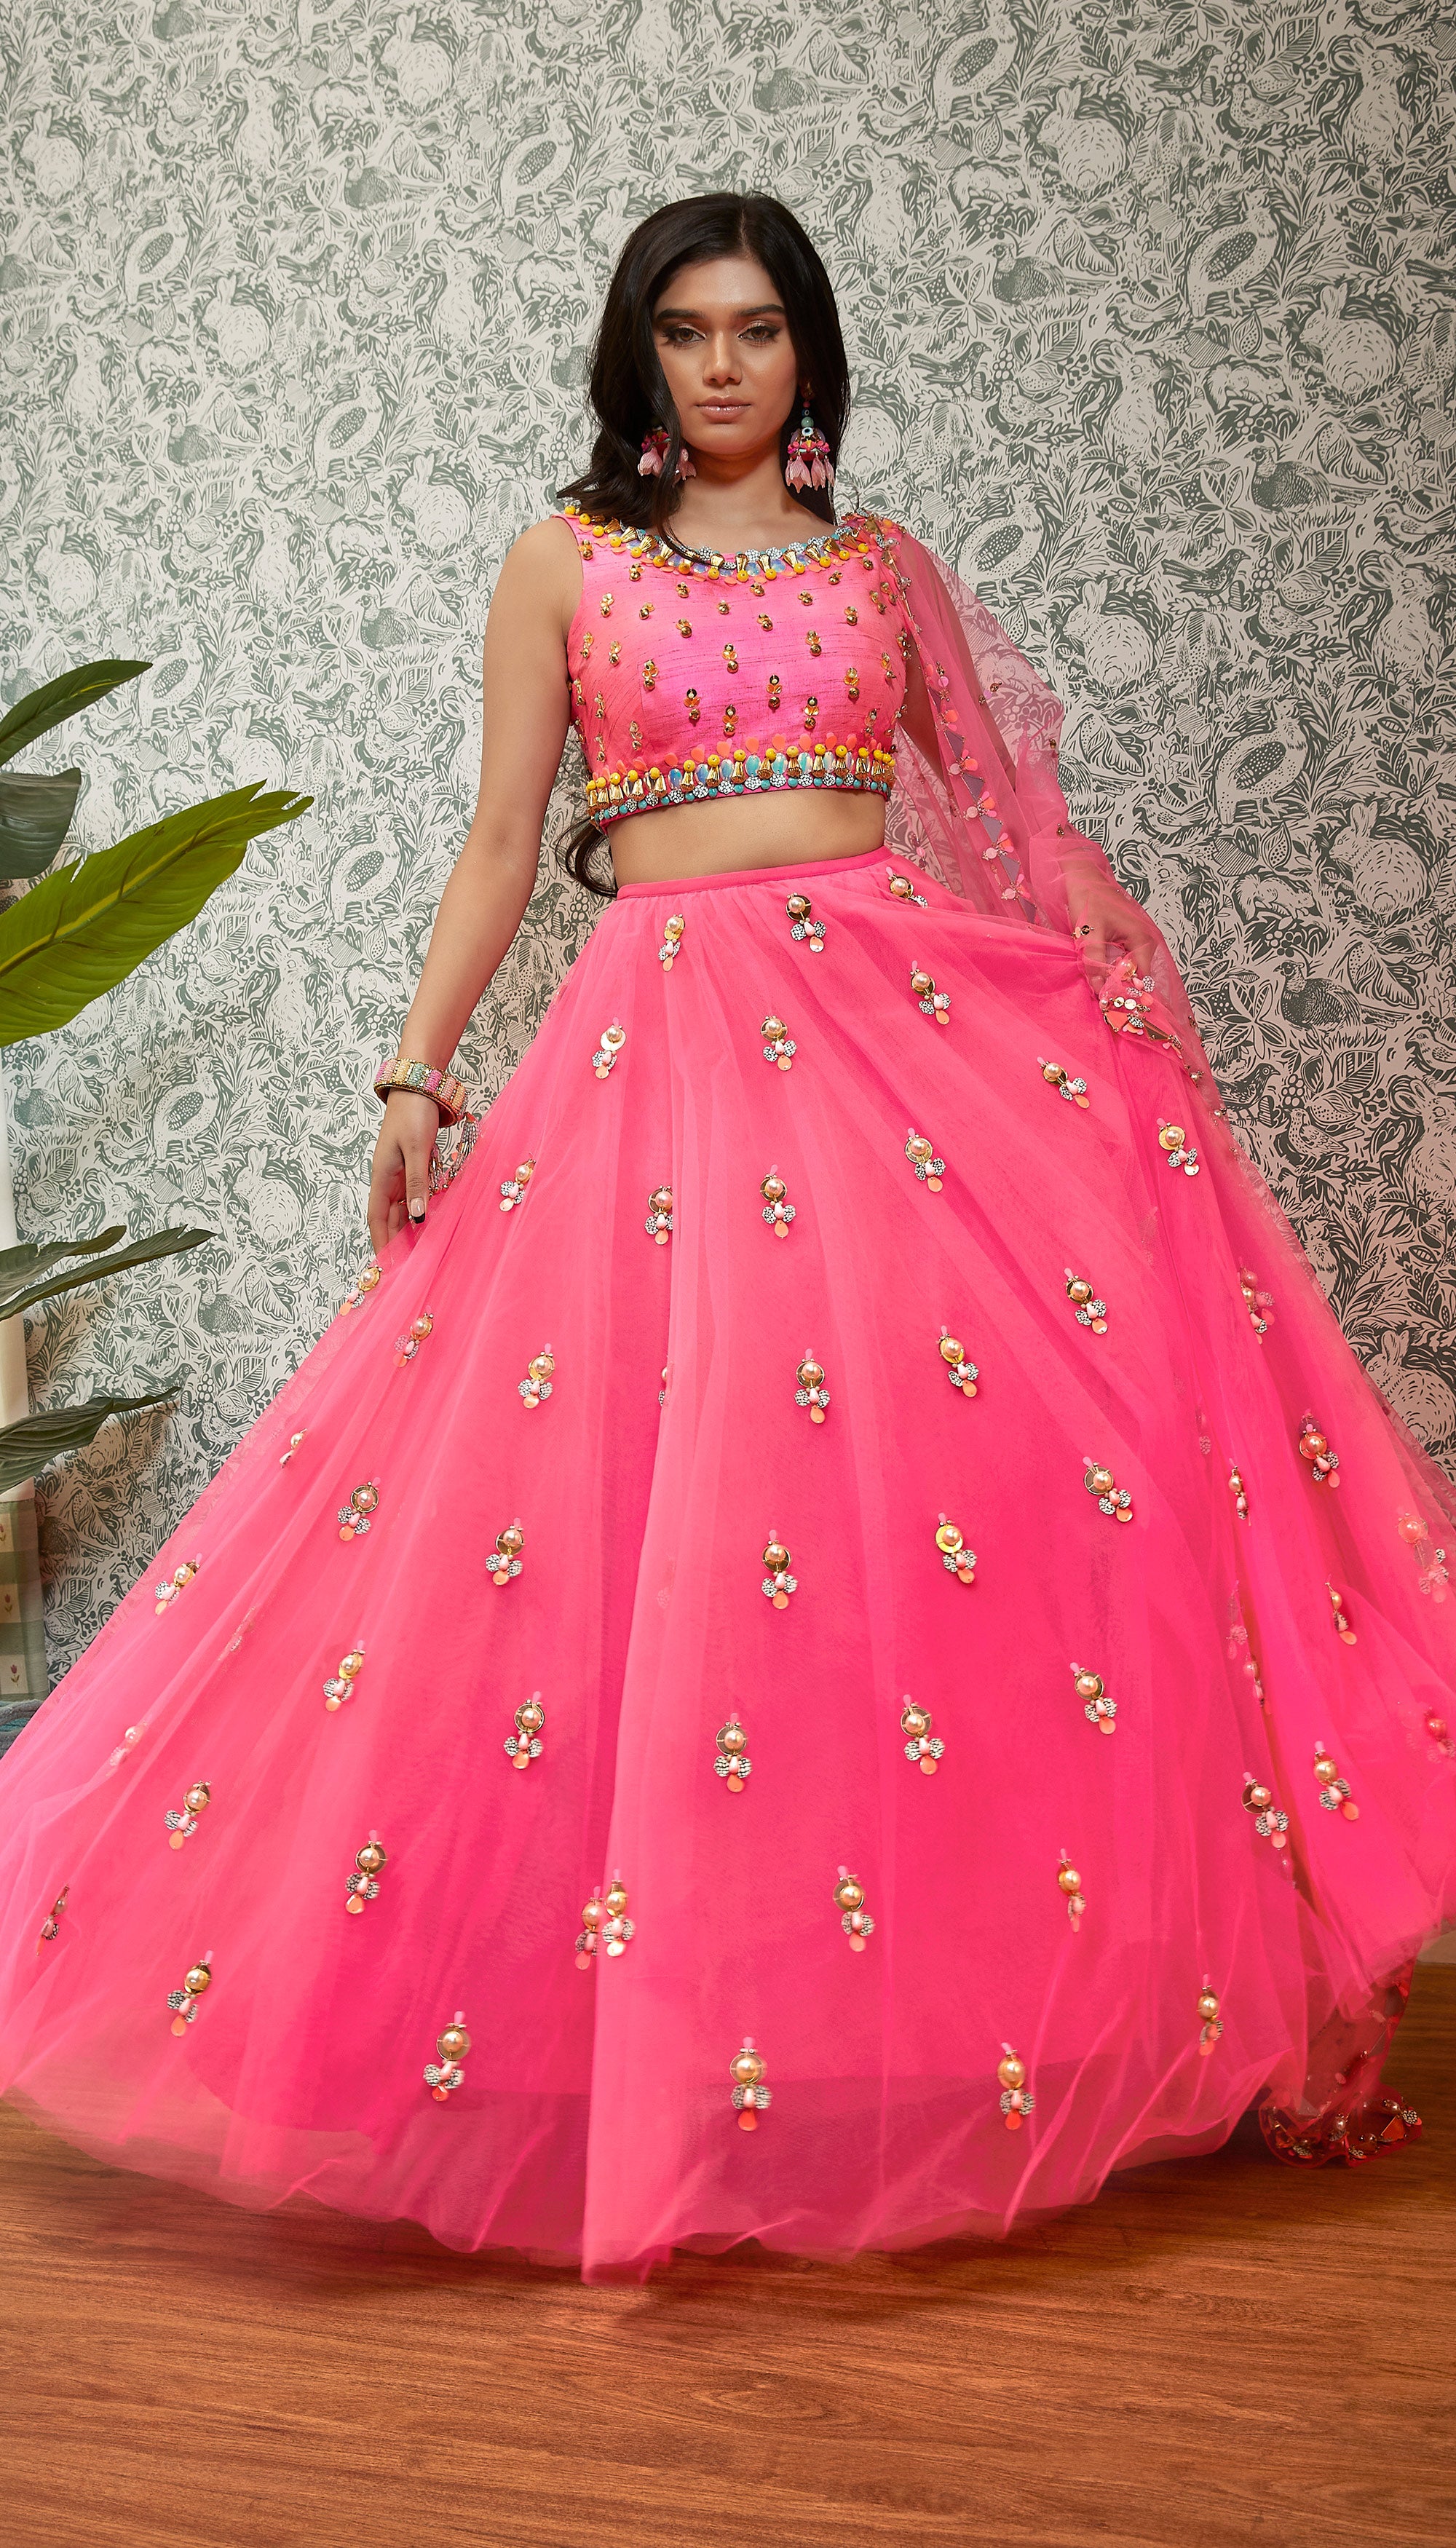 Navratri Style Cotton Gamathi Work Full Stitched Designer Lehenga Blouse  For Women at Rs 2699.00 | Umarwada | Surat| ID: 26138817862